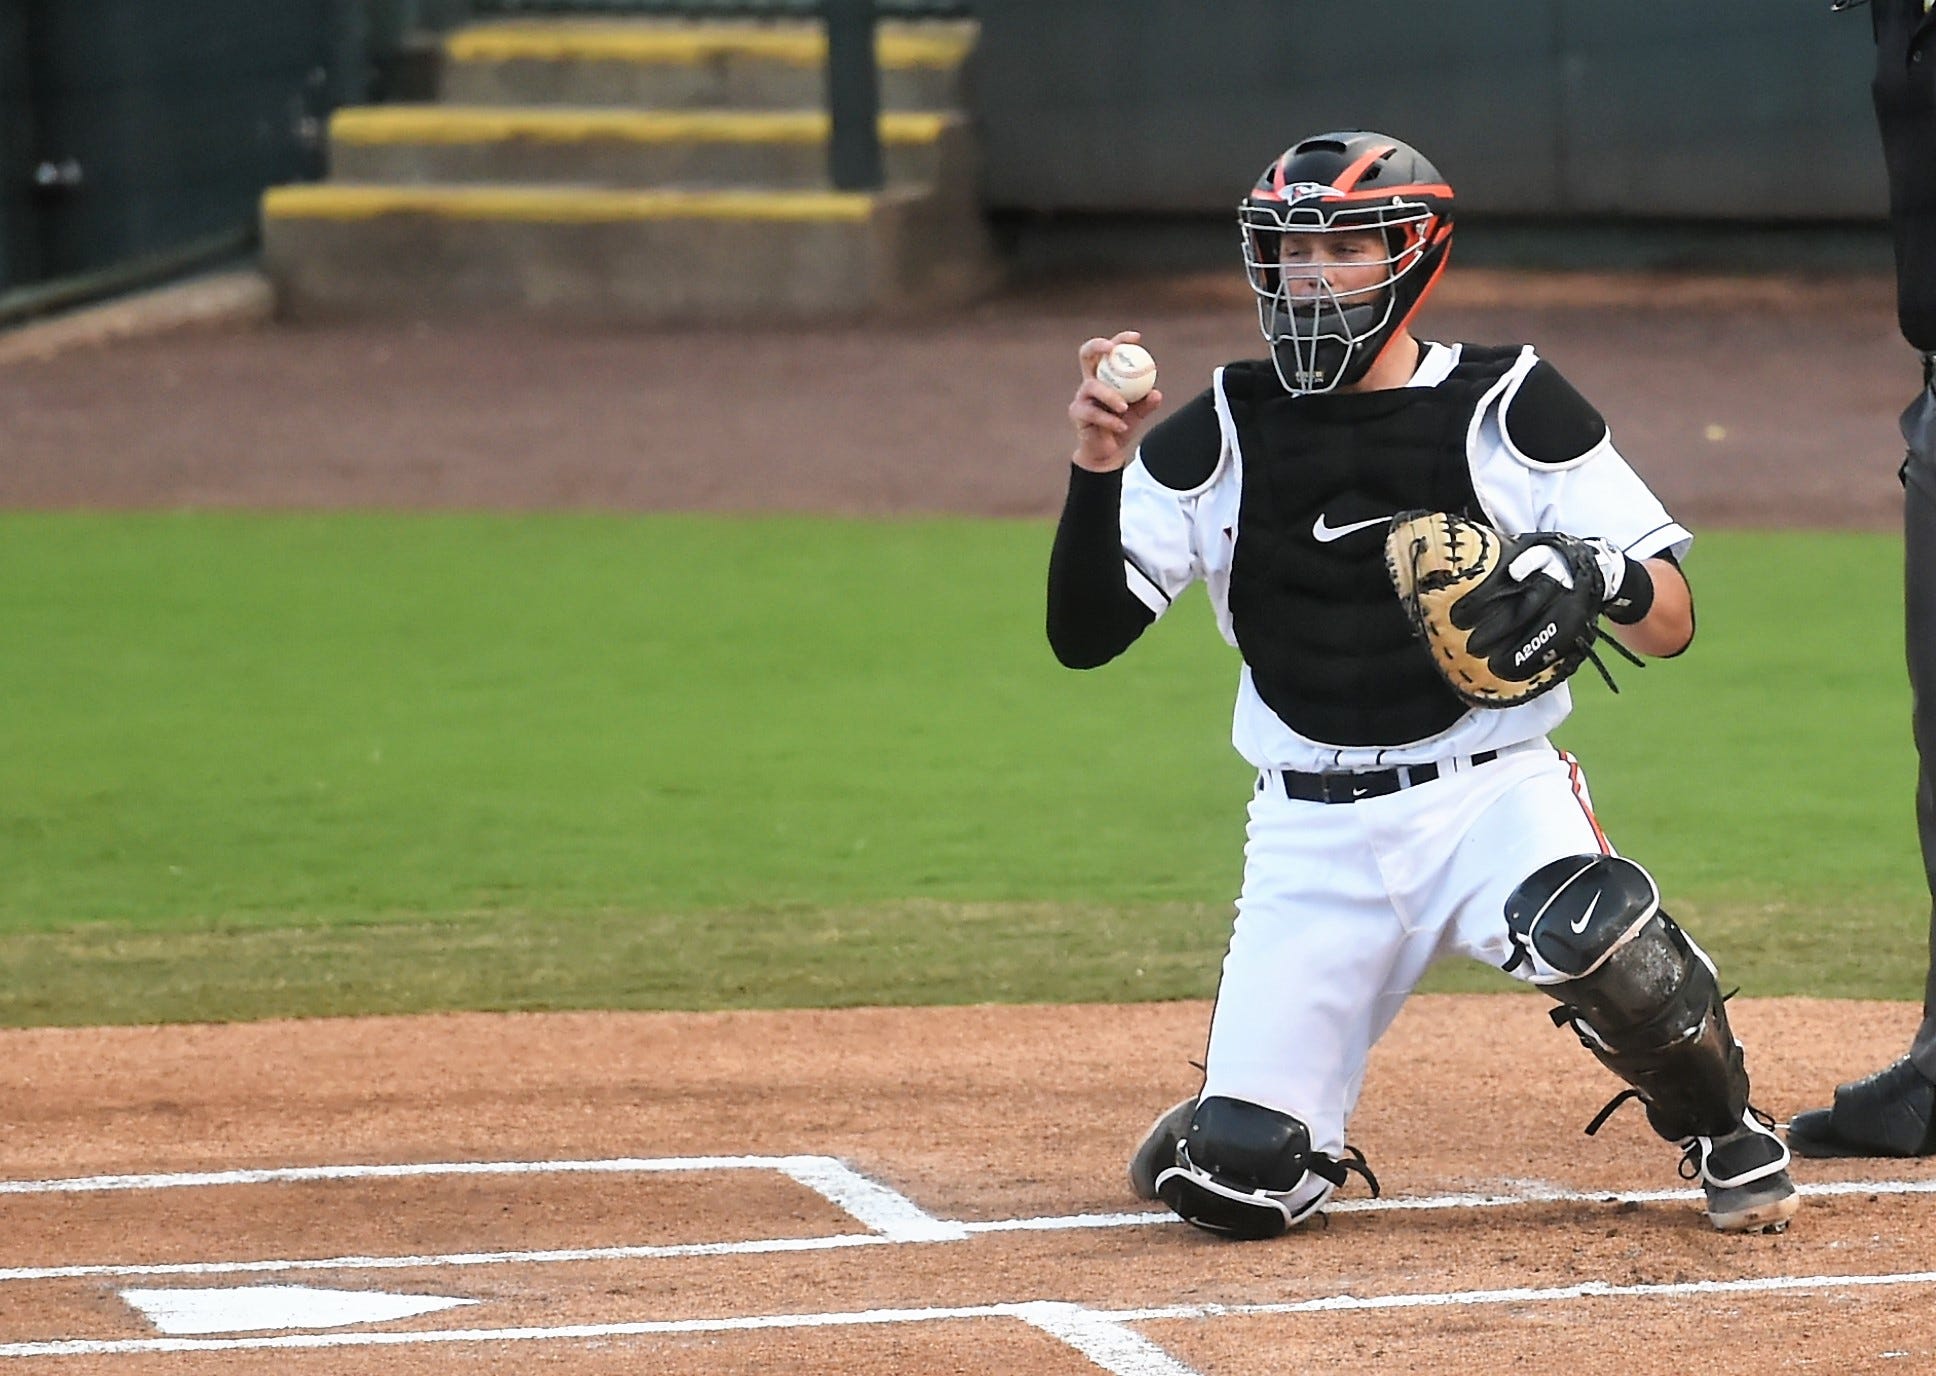 MLU: Adley Rutschman Is Still On Top - Baseball ProspectusBaseball